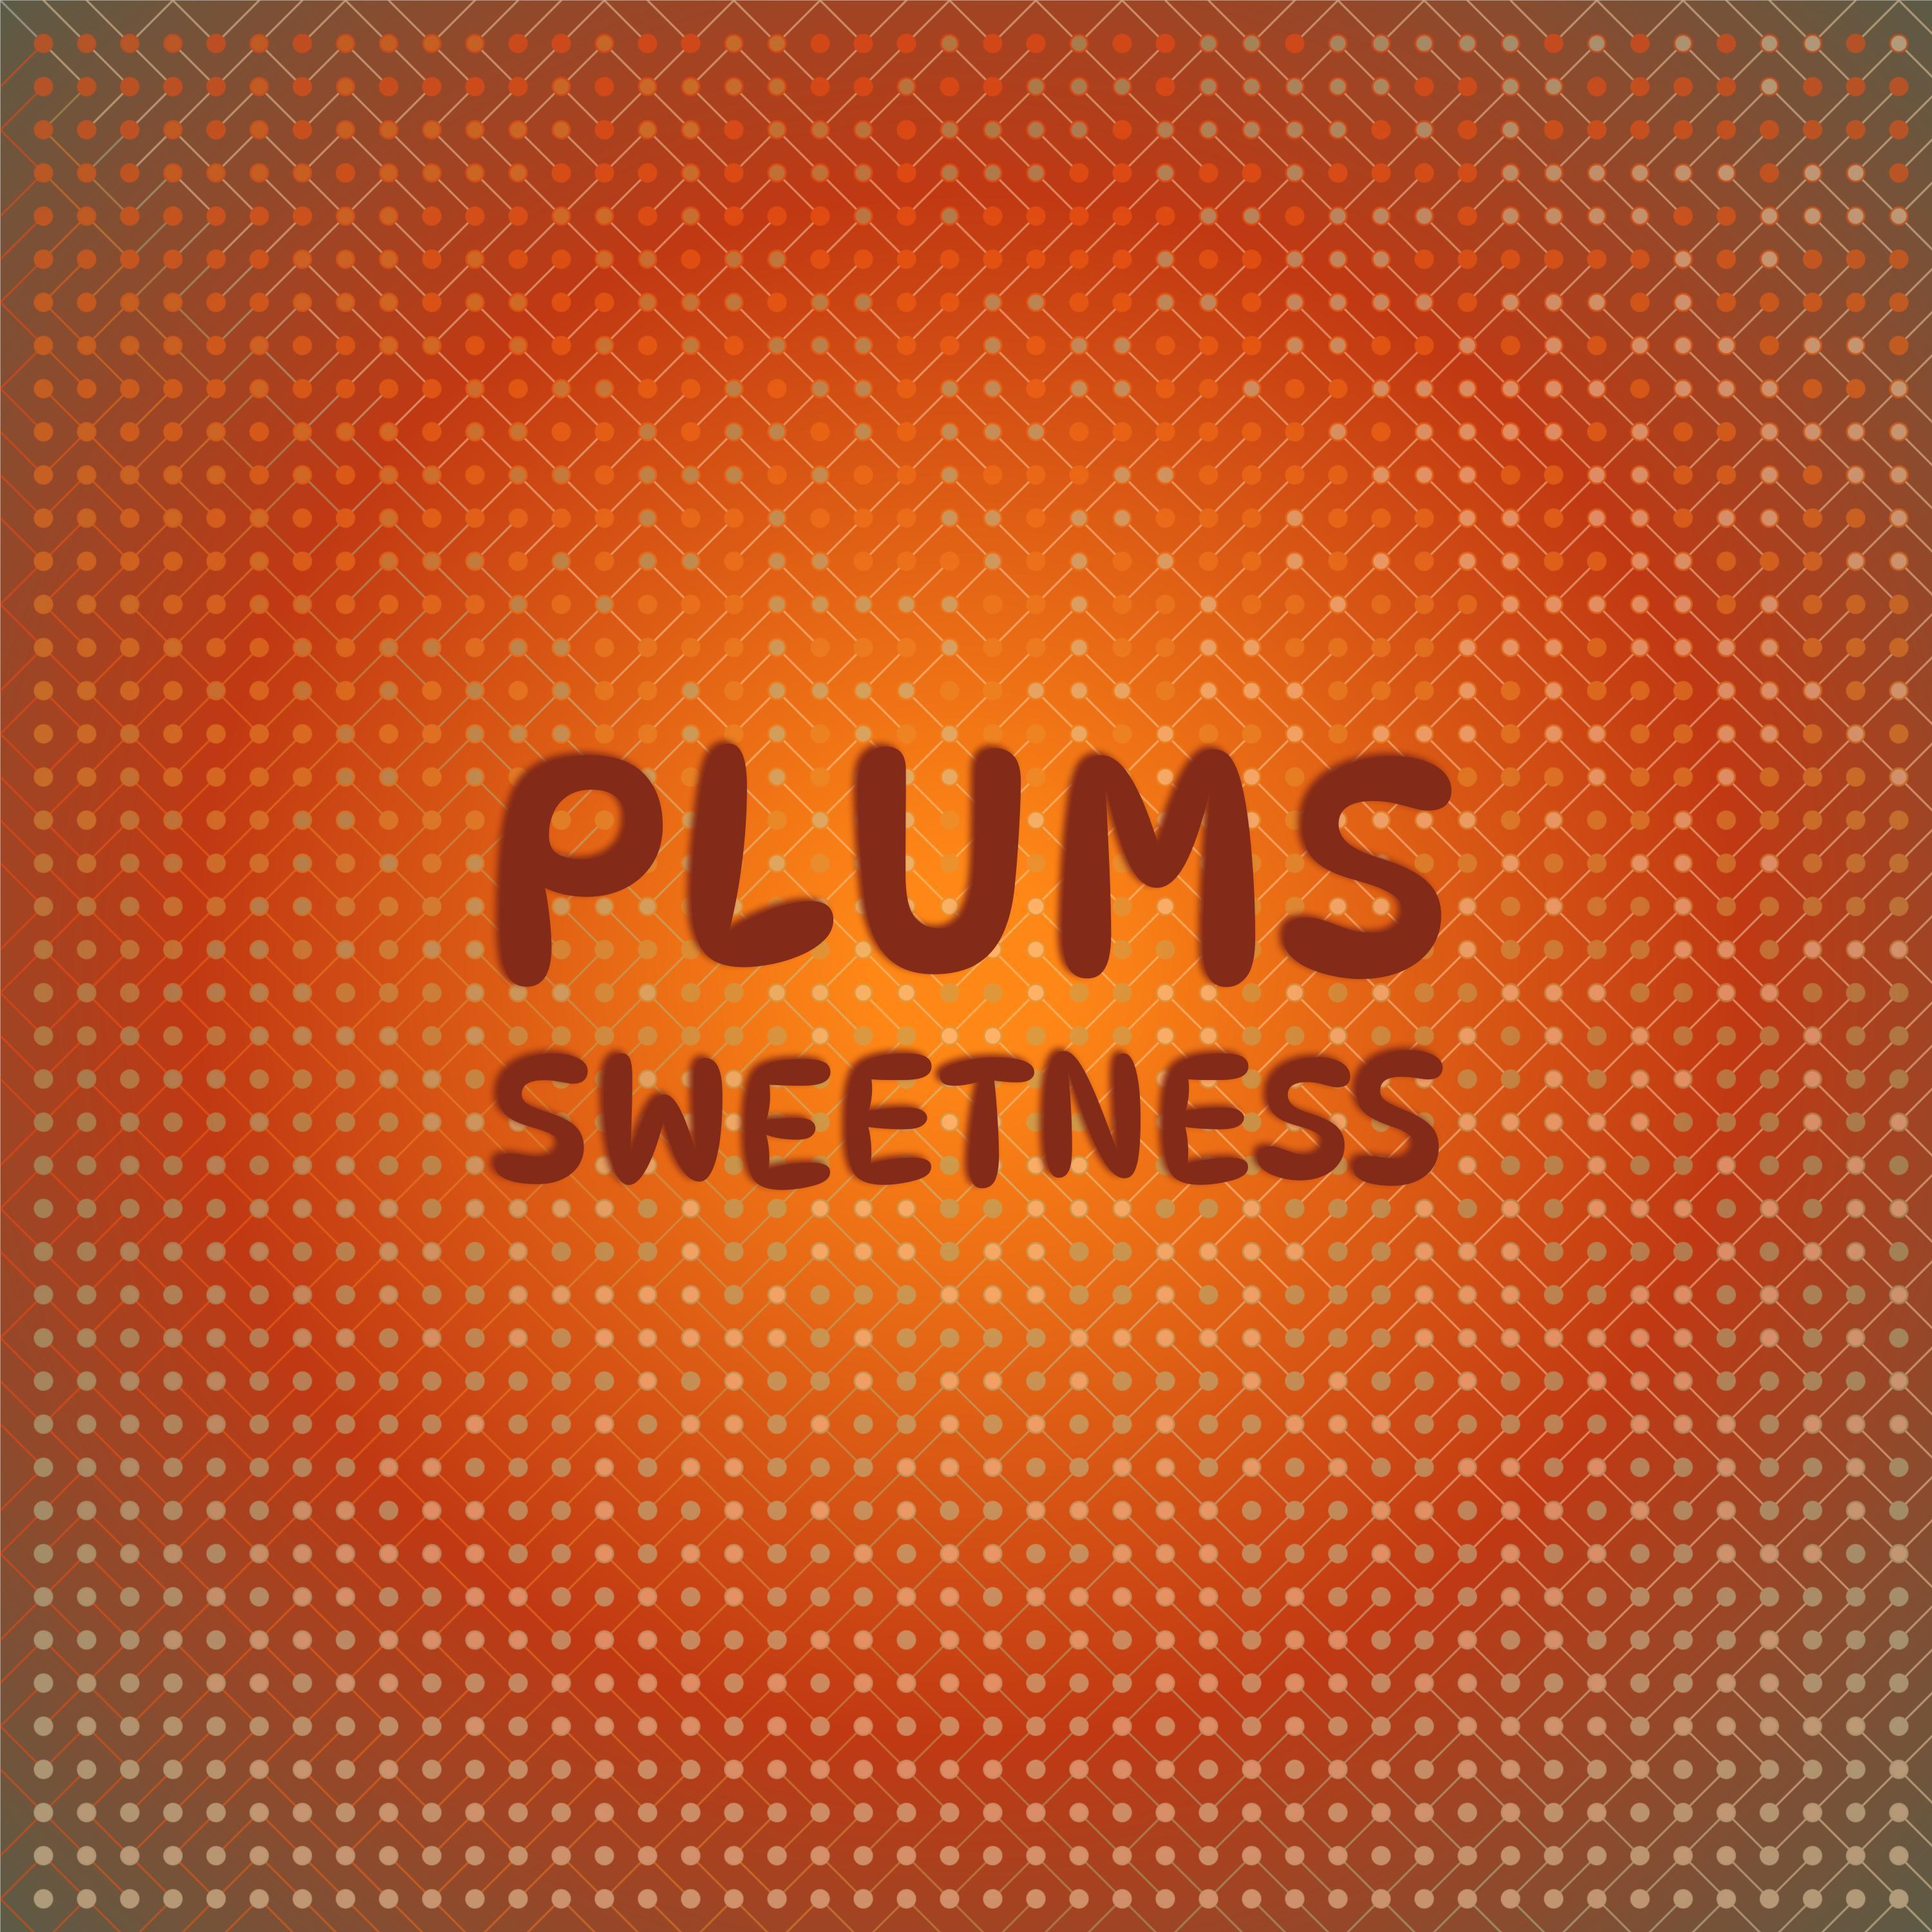 Brads Vainer - Plums Sweetness